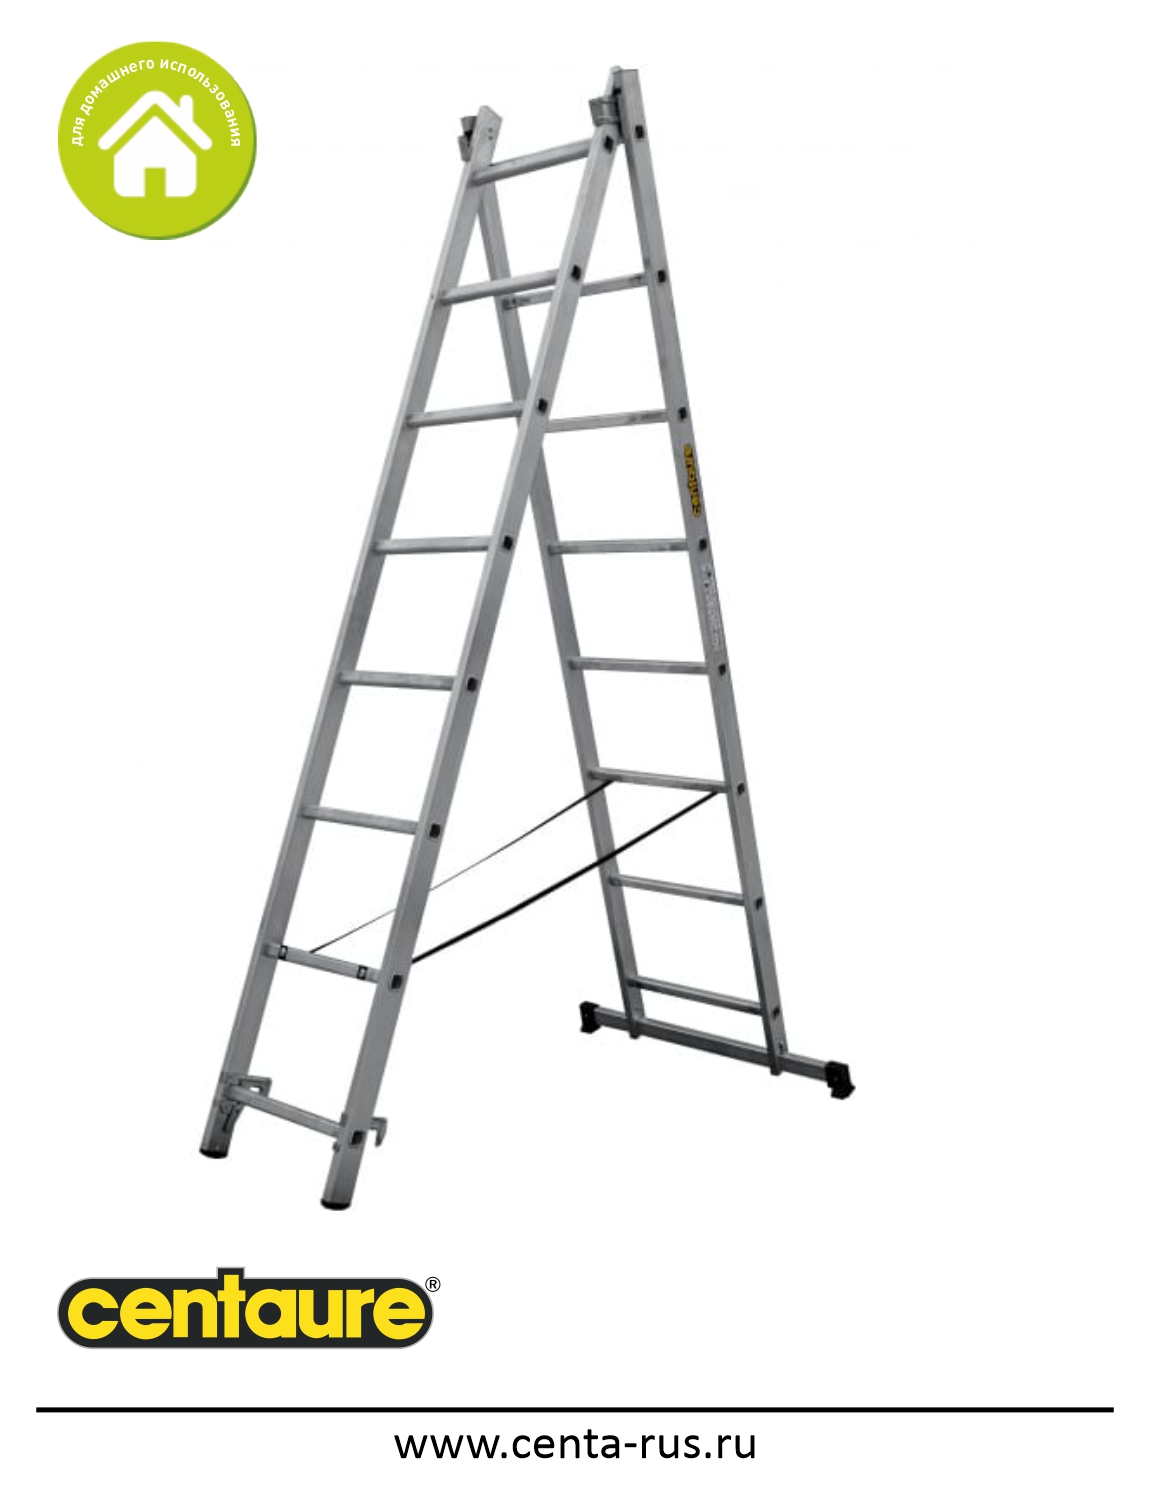 Двухсекционная лестница-стремянка Centaure 2х8 137208